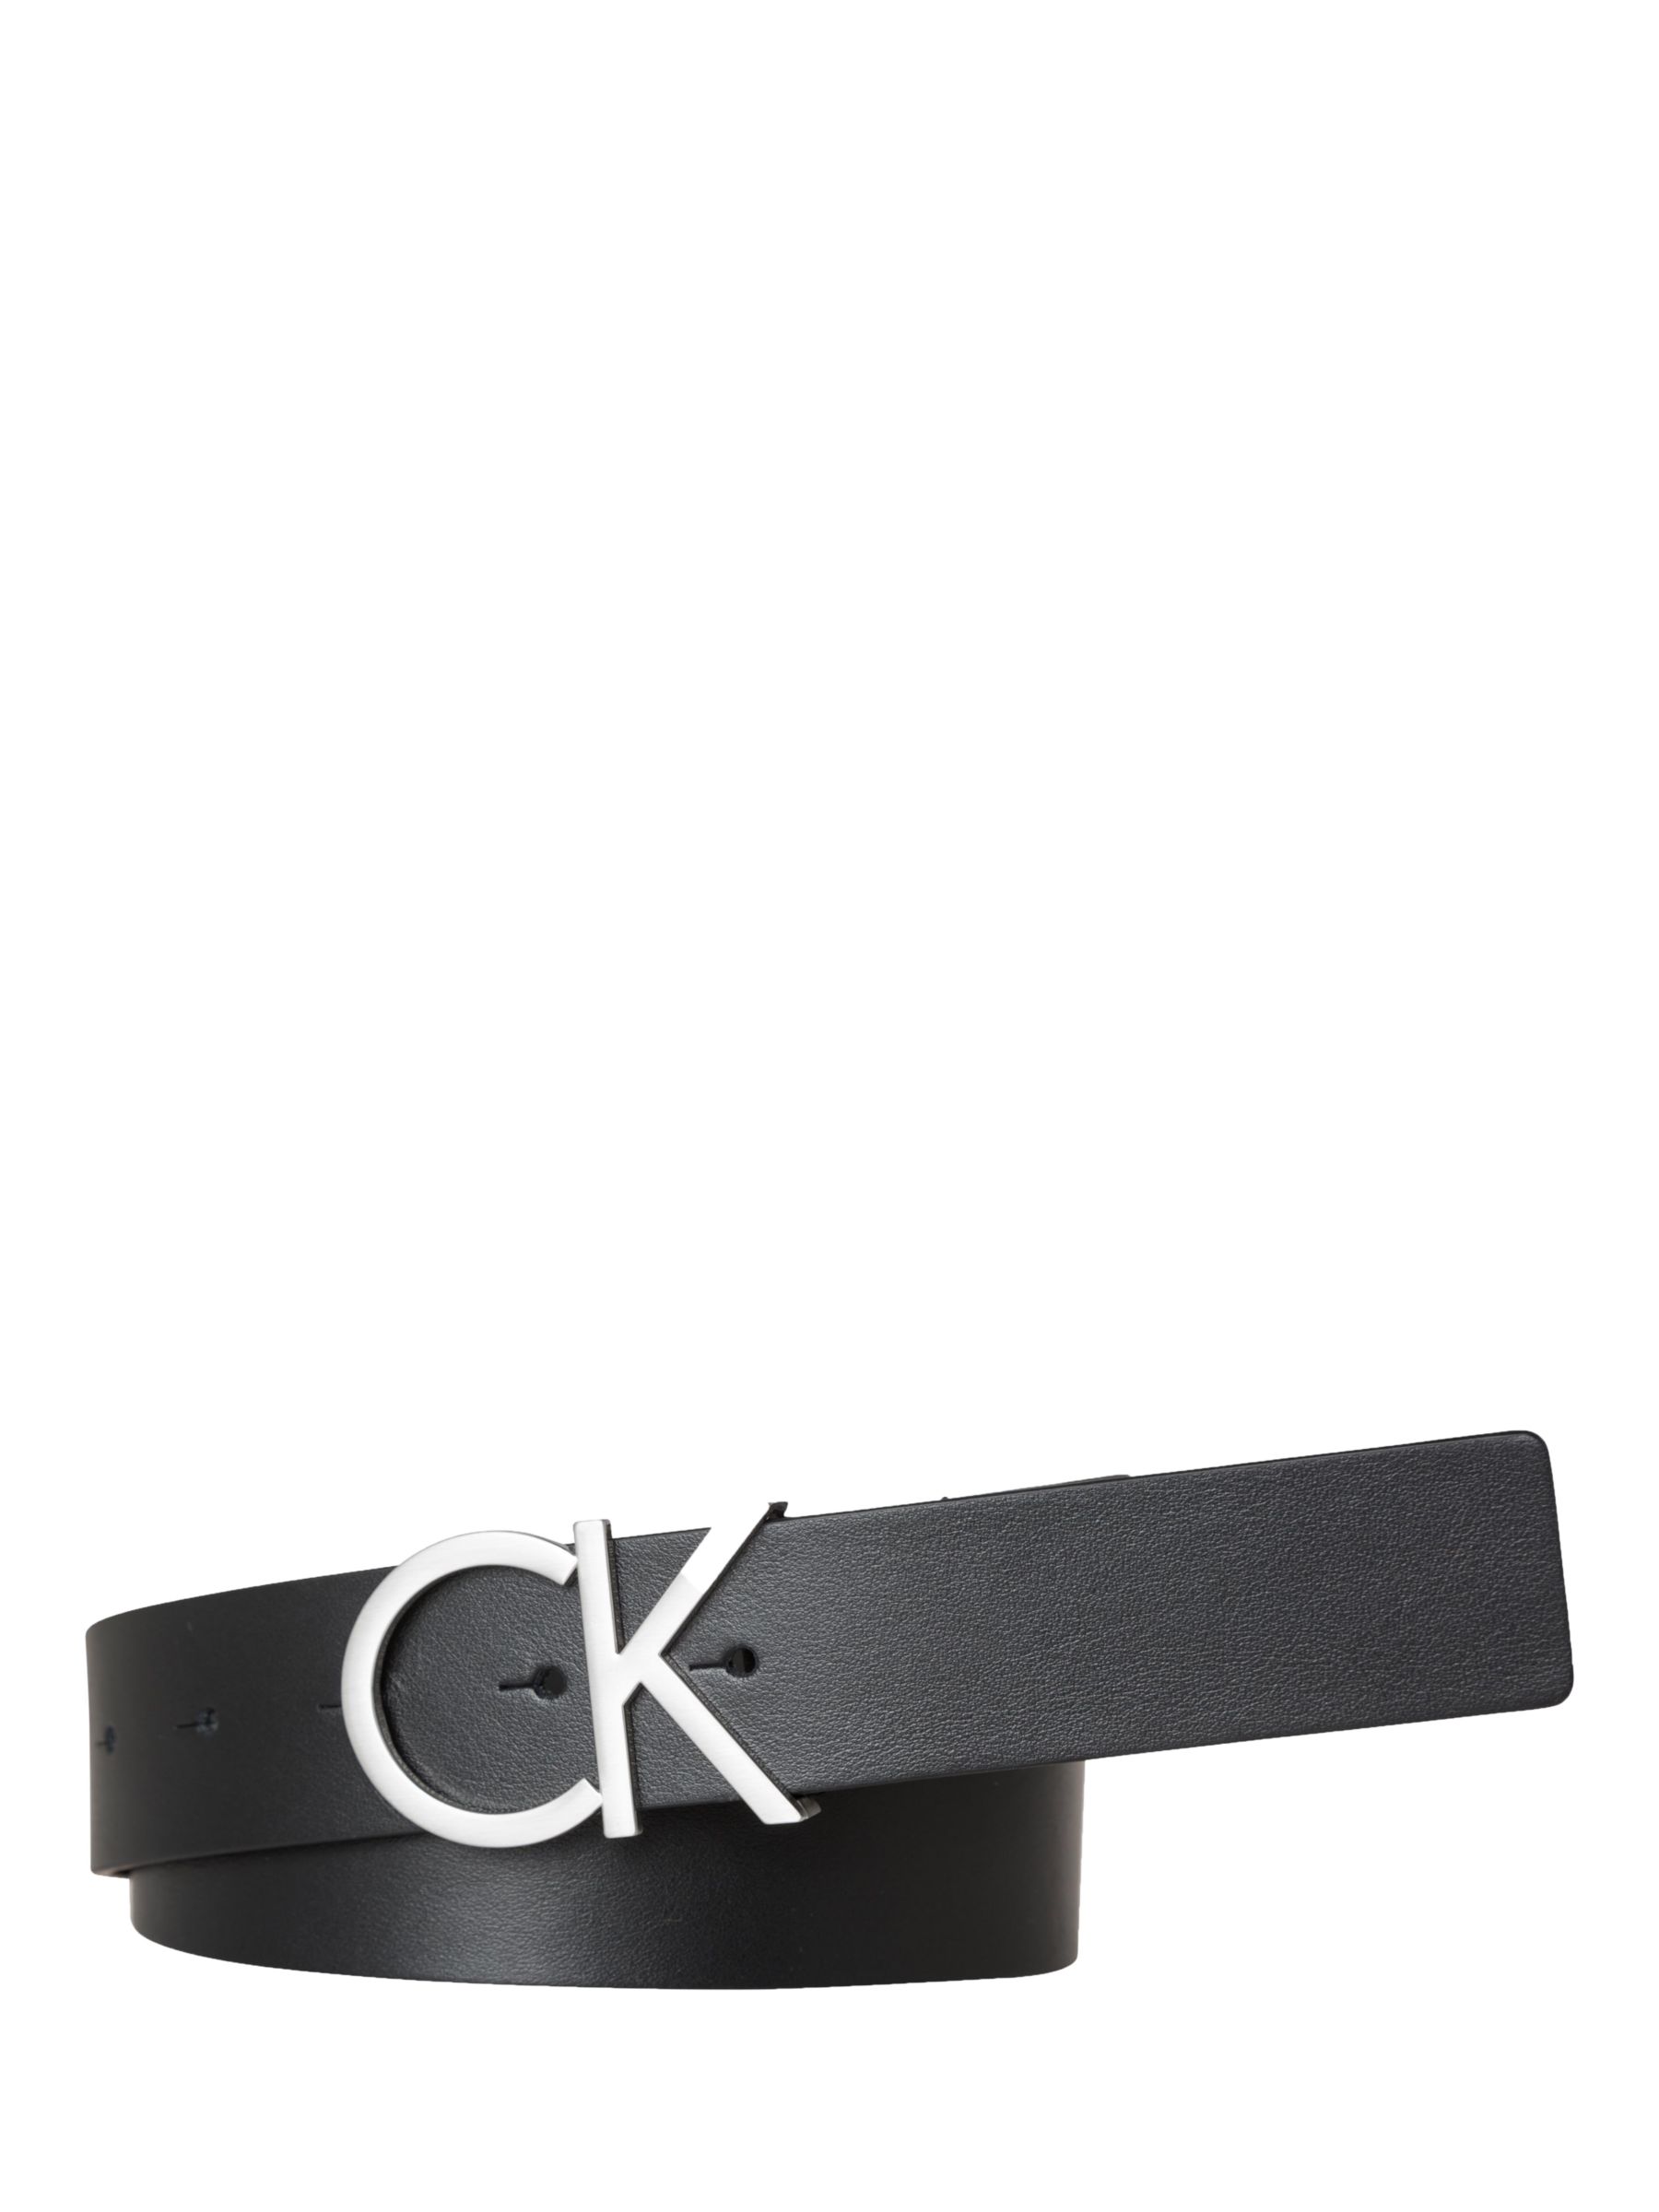 Calvin Klein Adjustable Leather Belt, Black at John Lewis & Partners